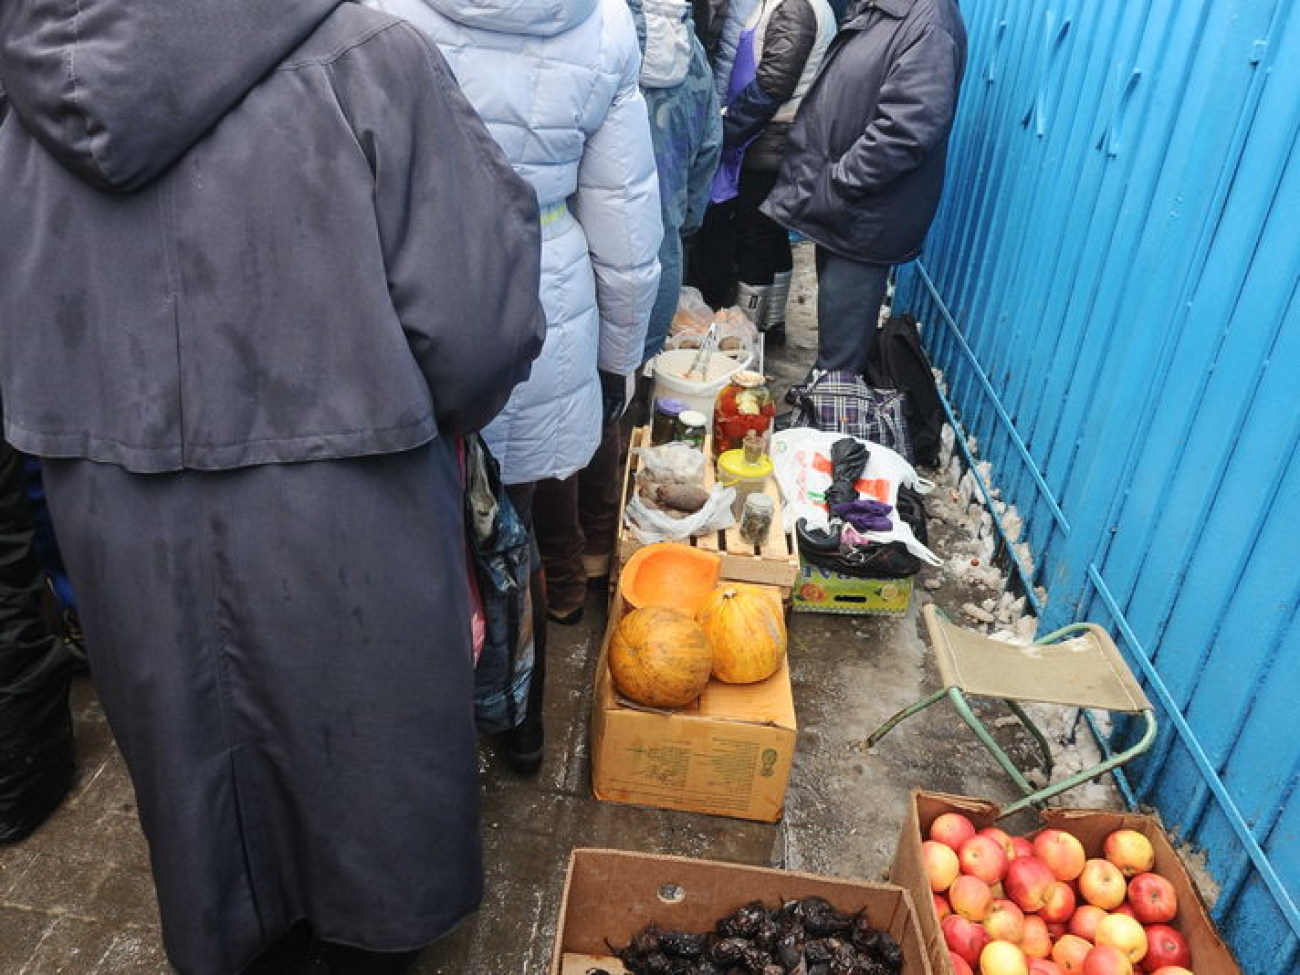 На столичном рынке легальные работники чуть не подрались со стихийщиками, 1 февраля 2013г.